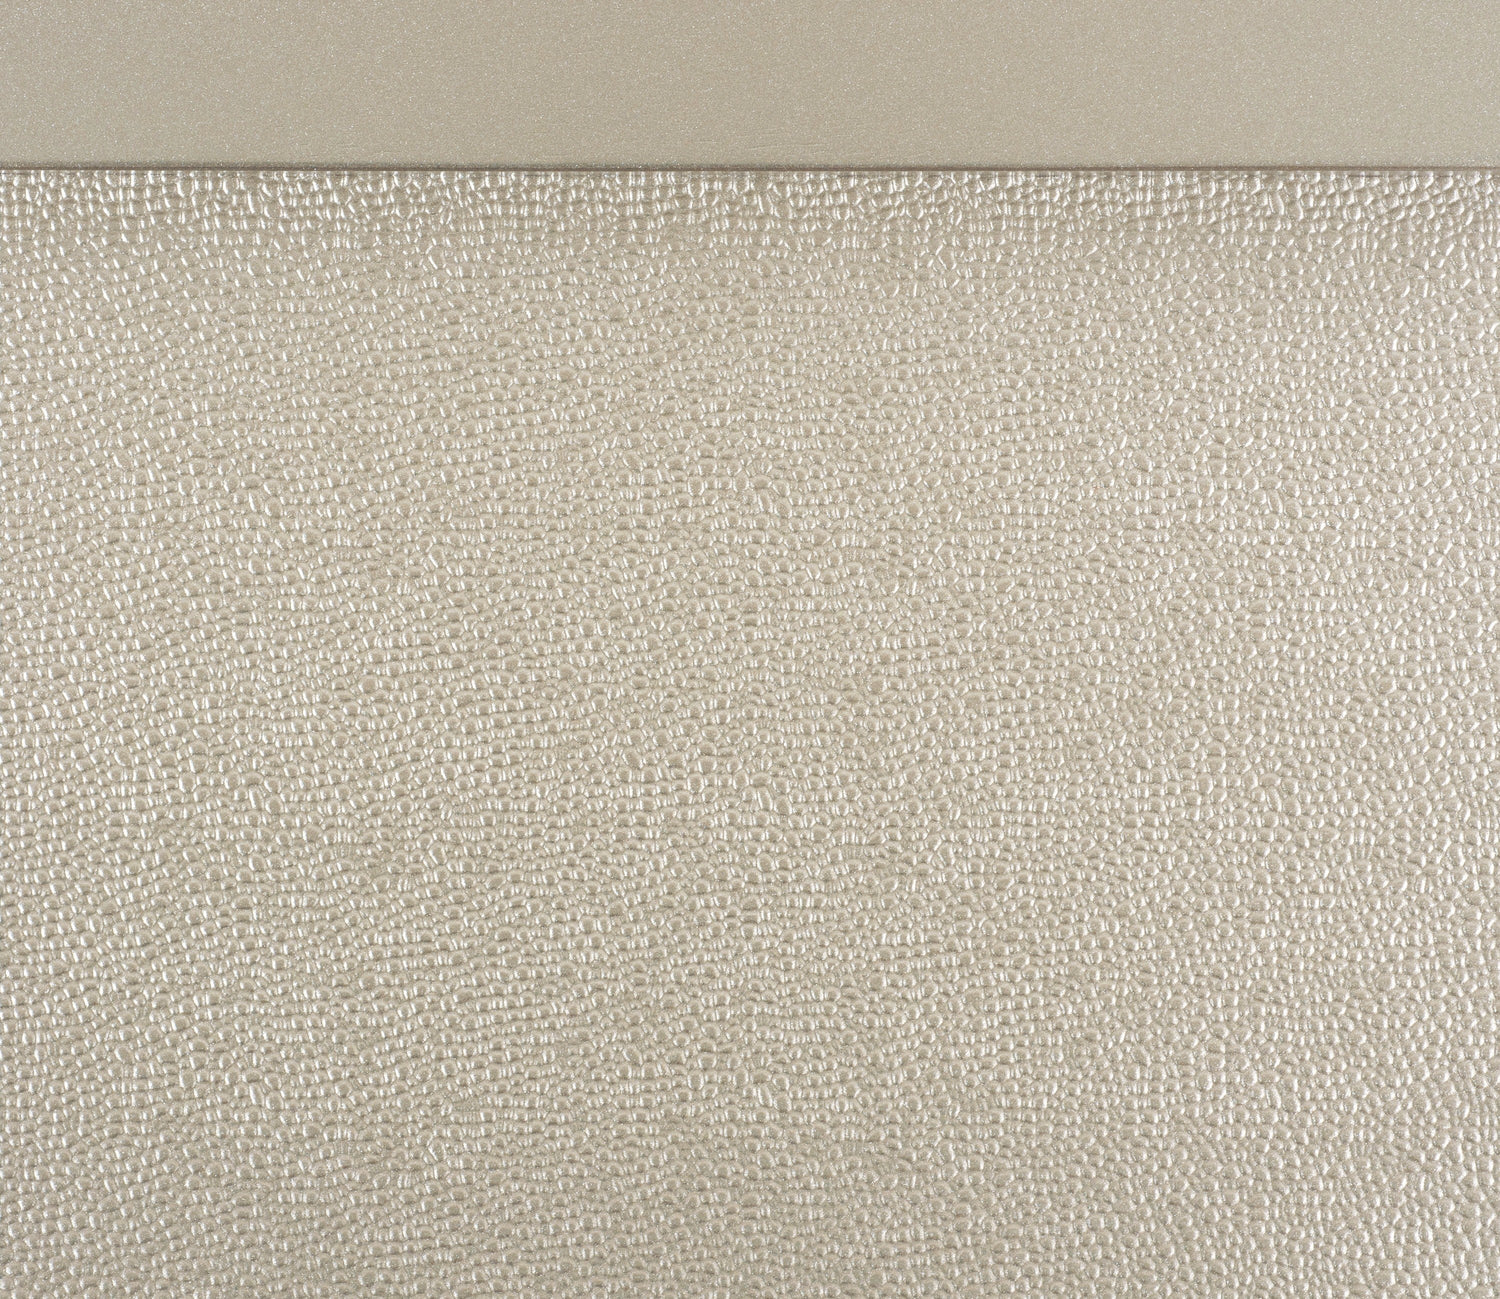 Celandine Silver Queen Upholstered Panel Bed - SET | 1928-1 | 1928-2 | 1928-3 - Bien Home Furniture &amp; Electronics